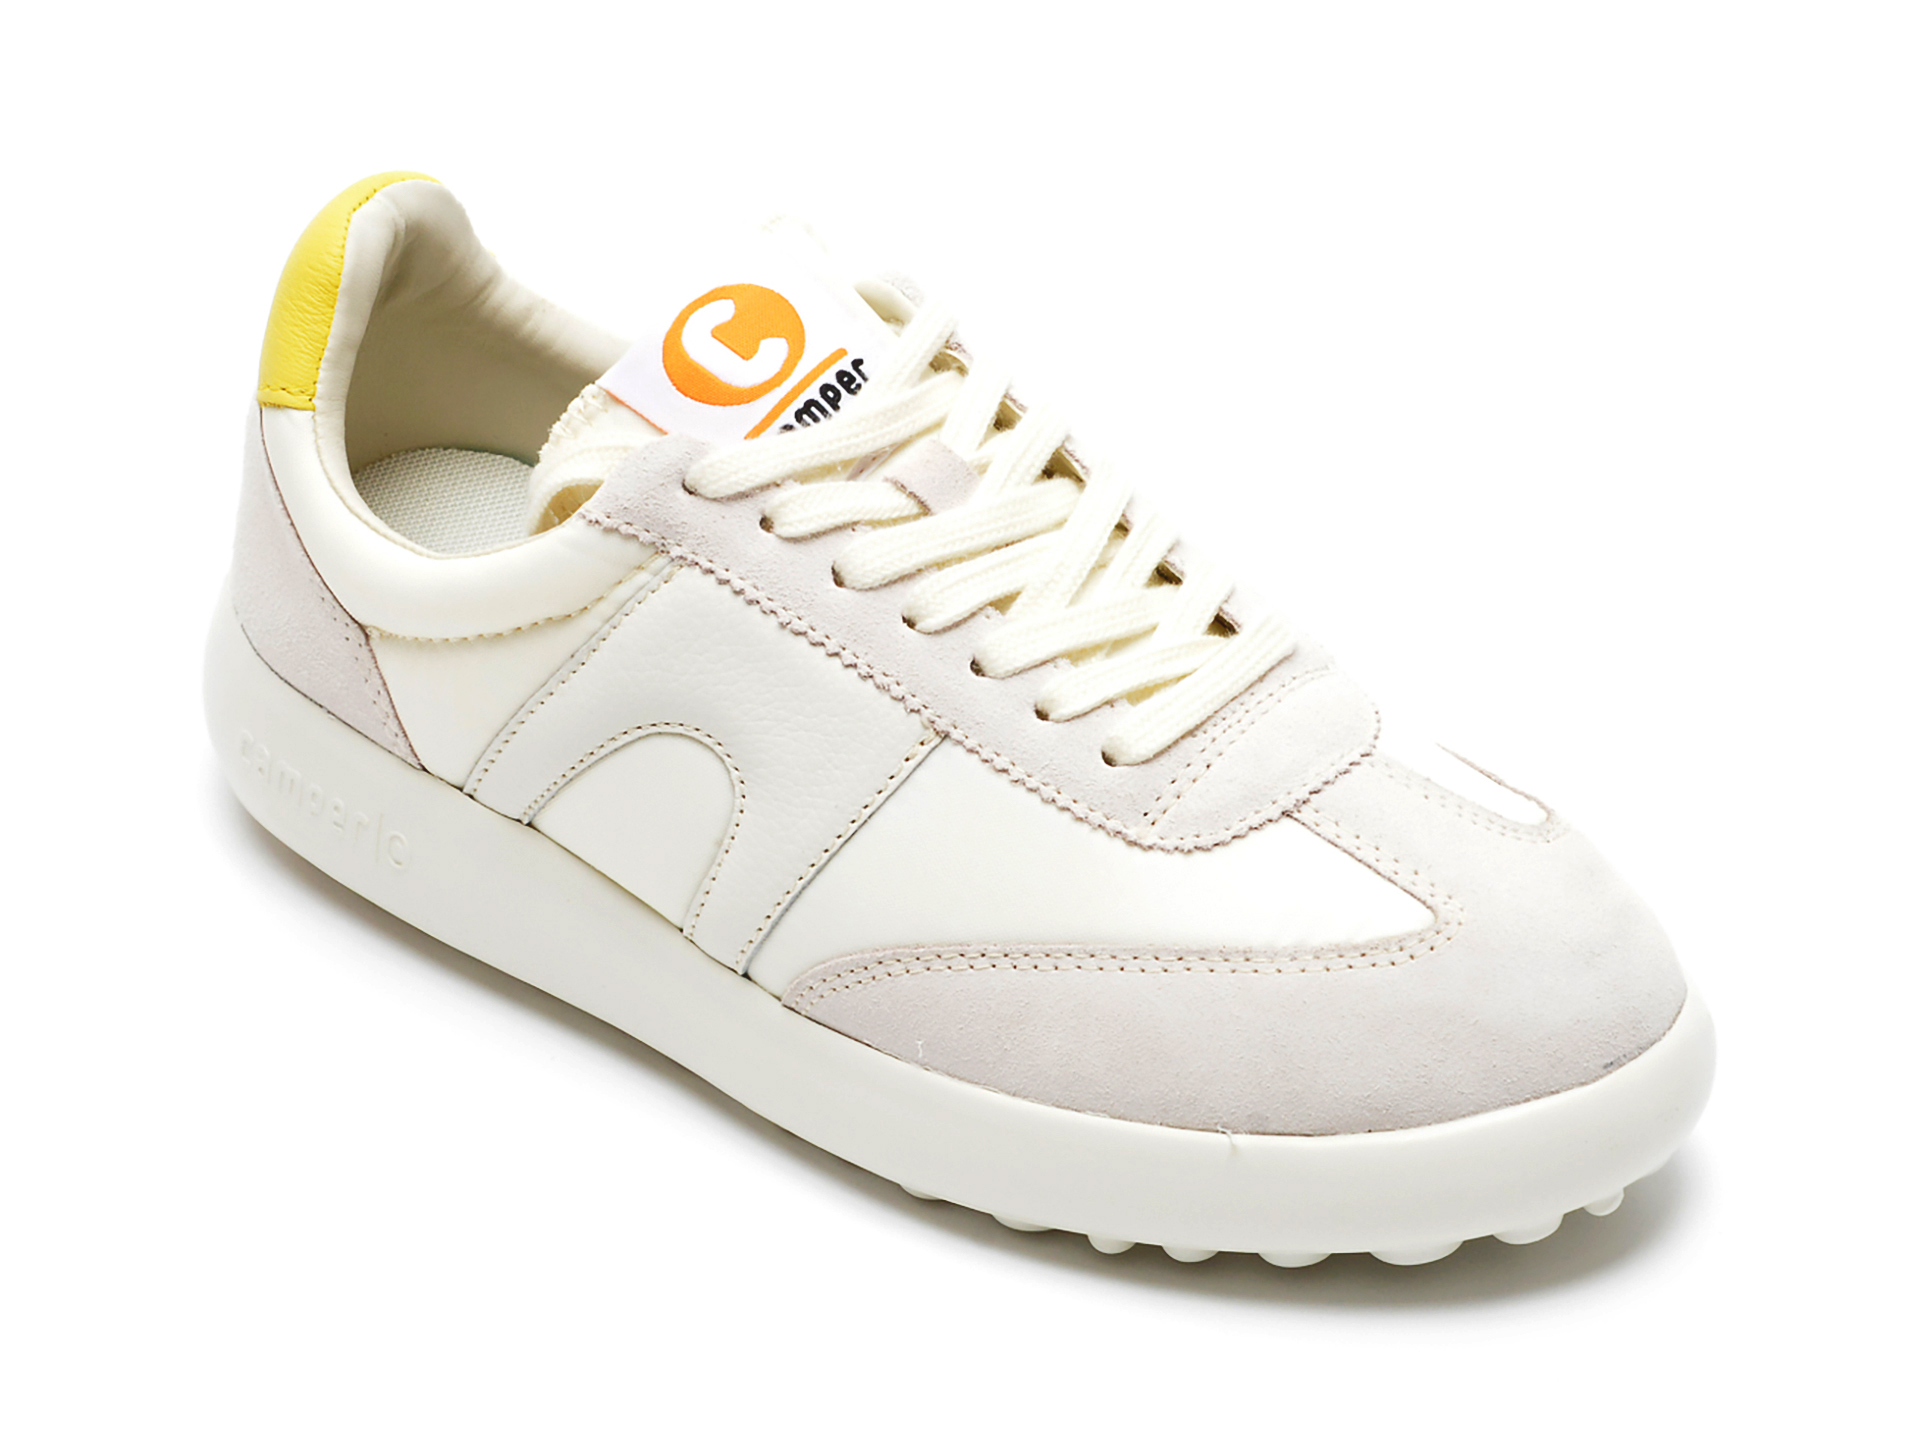 Pantofi sport CAMPER albi, K200975, din material textil si piele intoarsa Camper Camper